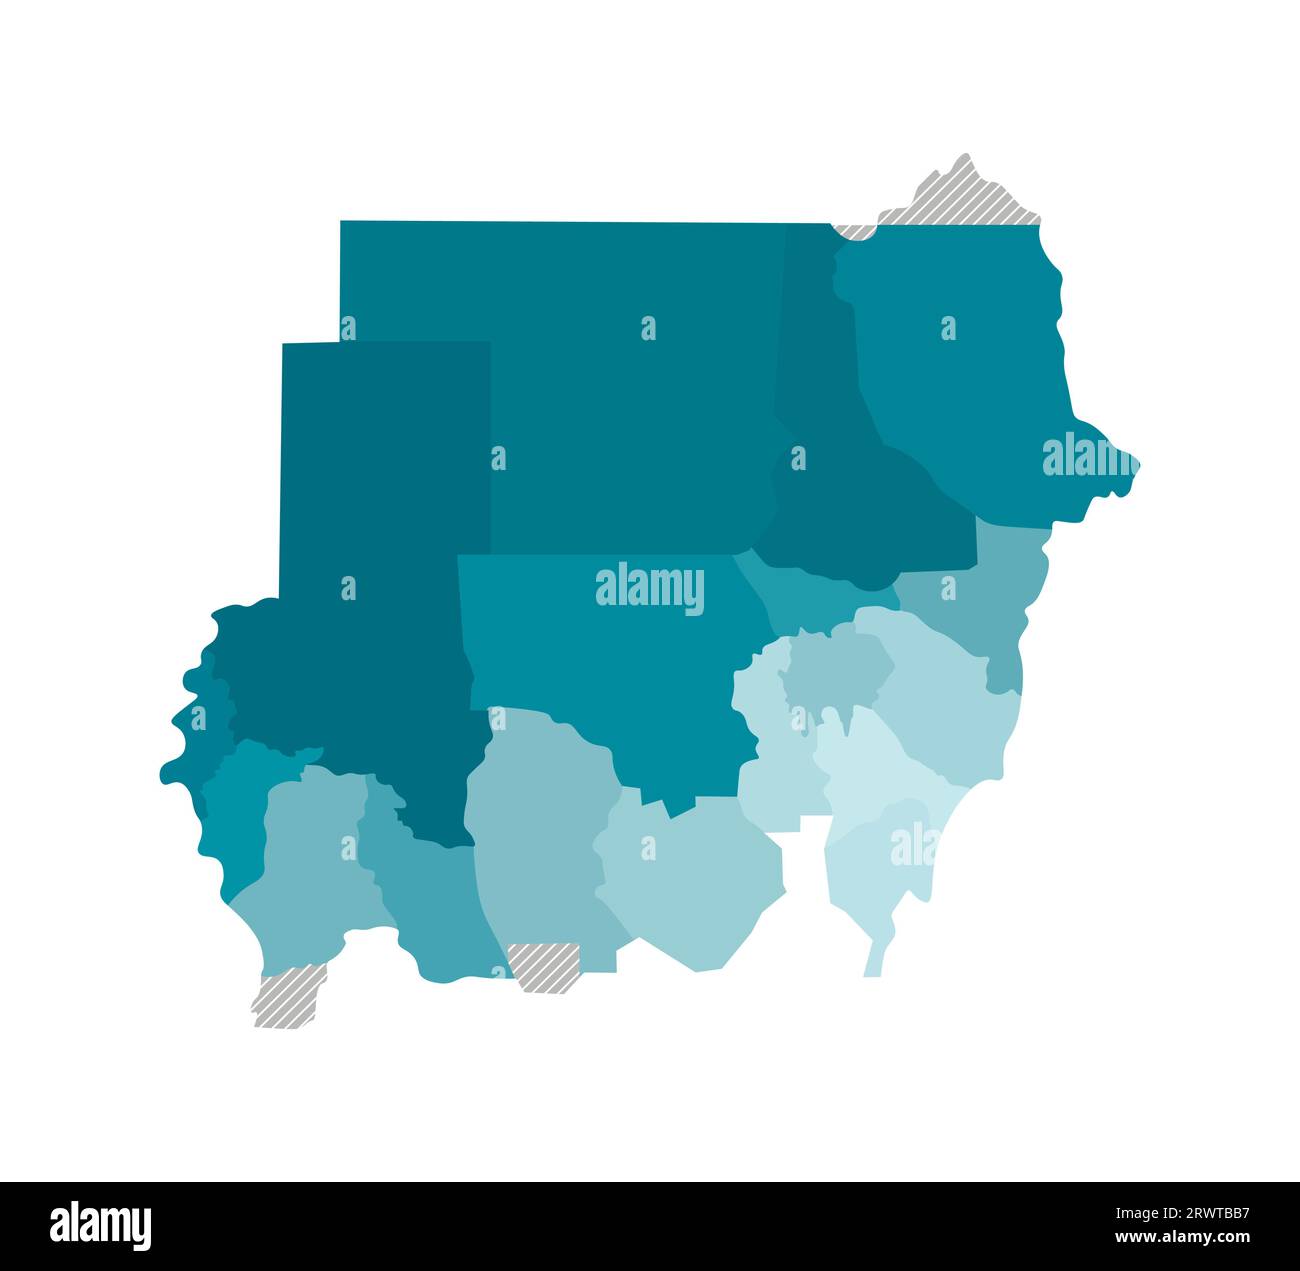 Illustration isolée vectorielle de la carte administrative simplifiée du Soudan. Frontières des régions. Silhouettes kaki bleues colorées. Illustration de Vecteur